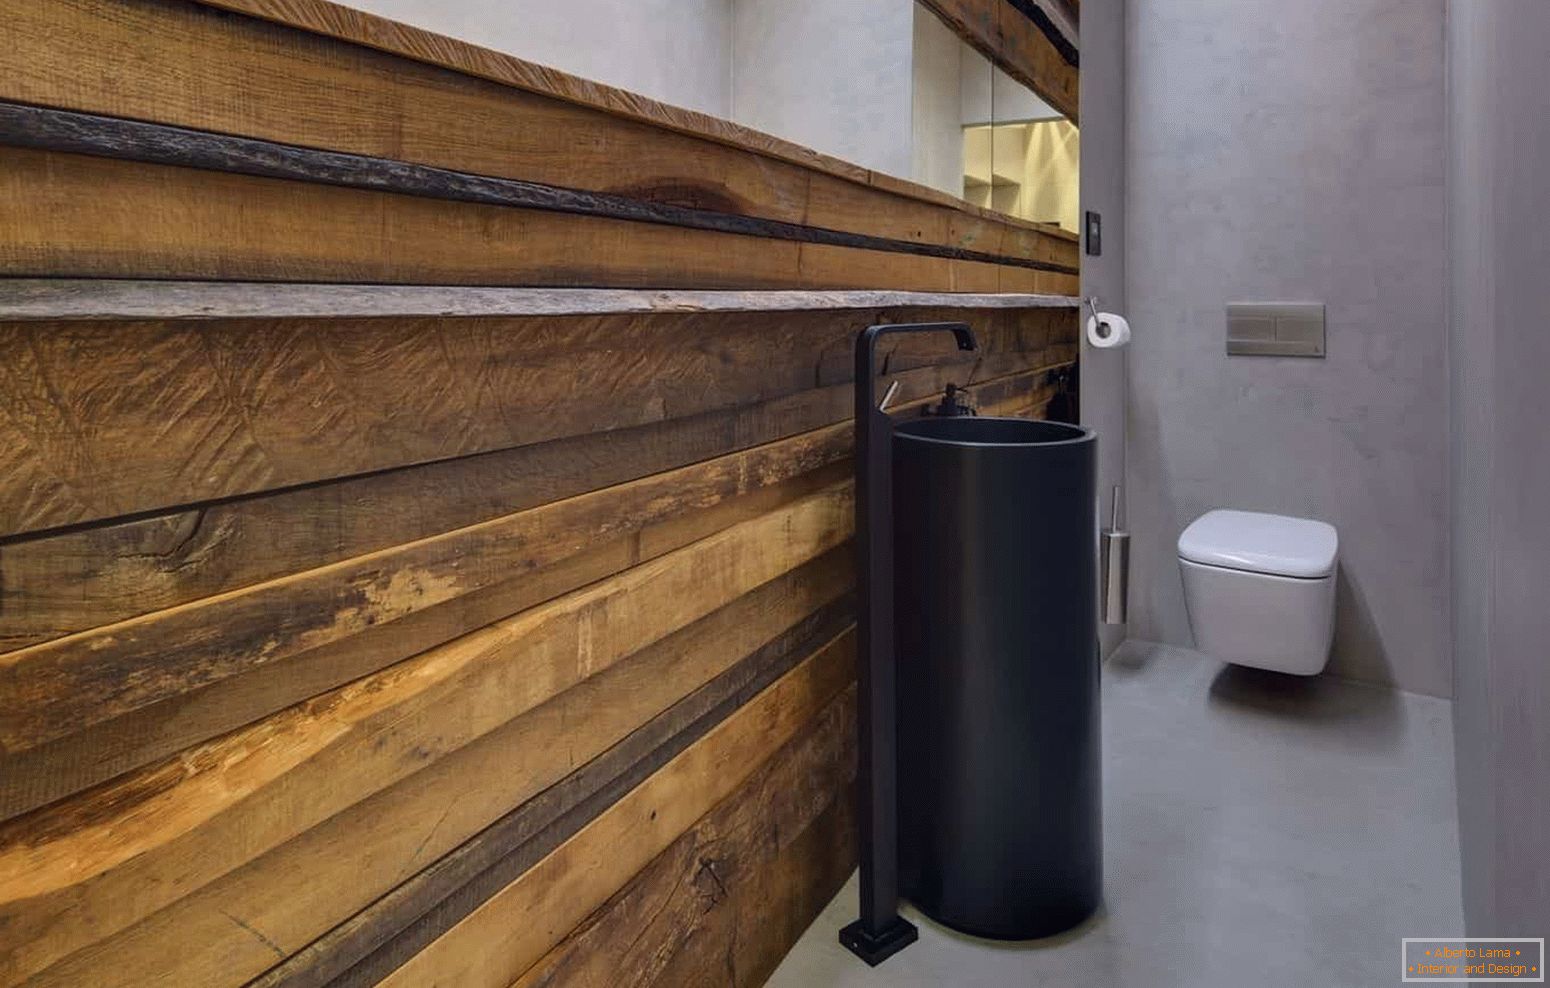 Design moderno di un piccolo servizio igienico in eco-stile con un involucro insolito